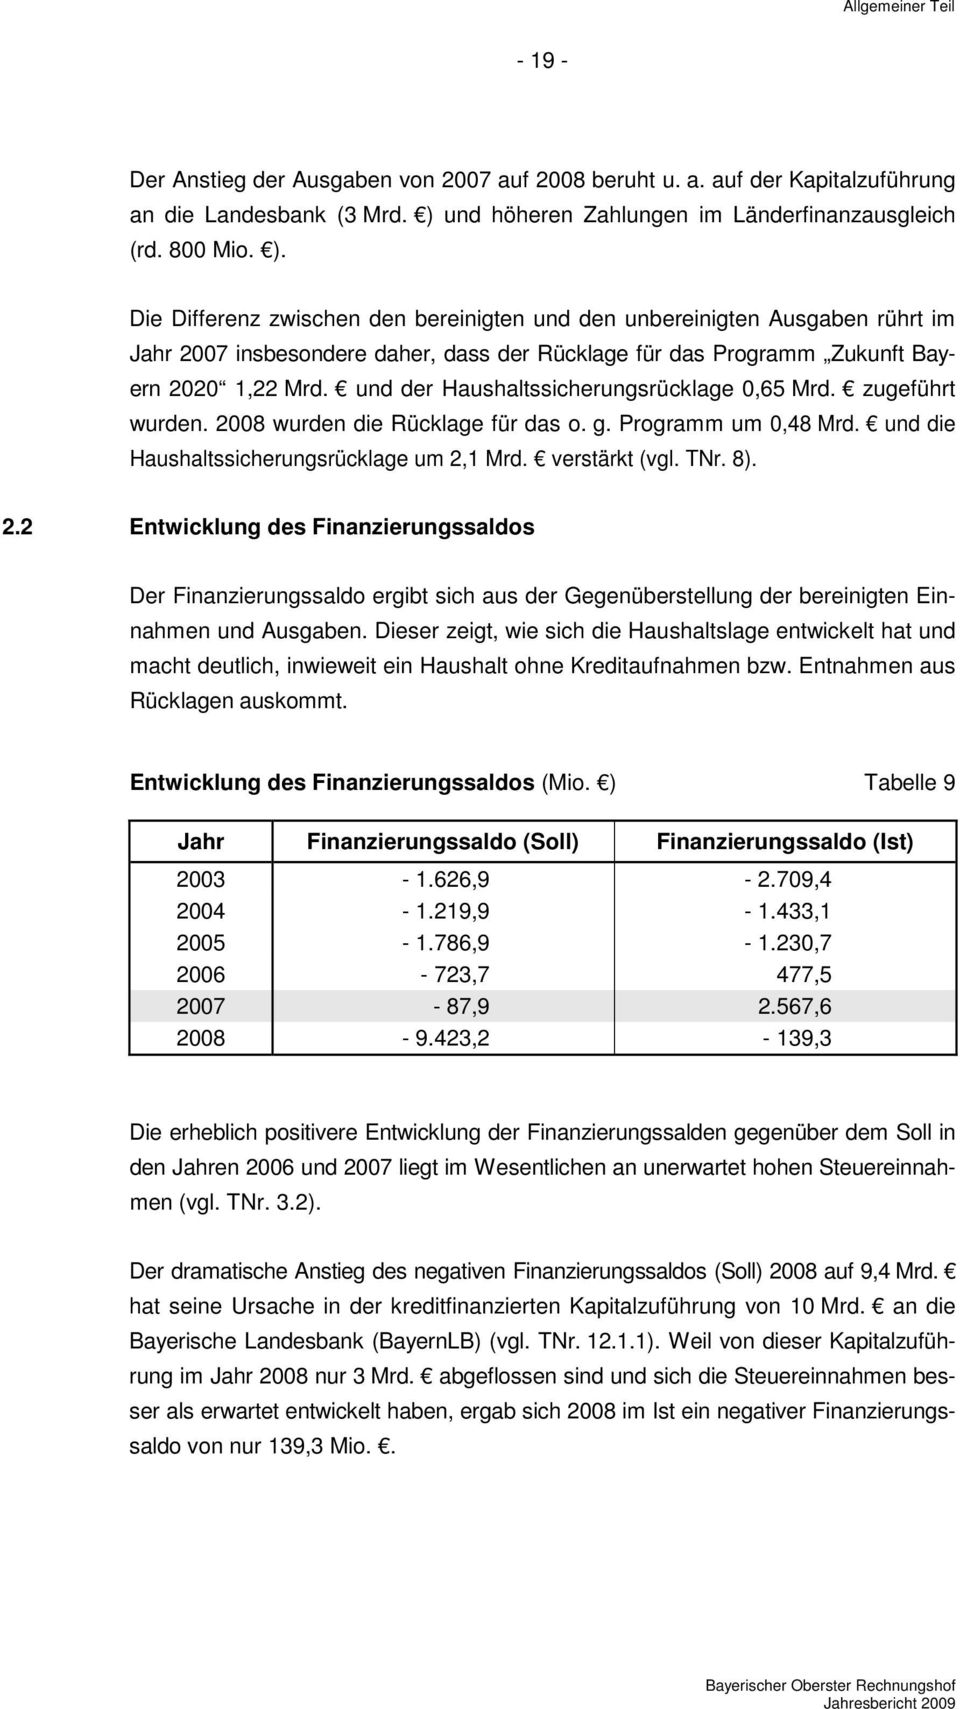 Die Differenz zwischen den bereinigten und den unbereinigten Ausgaben rührt im Jahr 2007 insbesondere daher, dass der Rücklage für das Programm Zukunft Bayern 2020 1,22 Mrd.